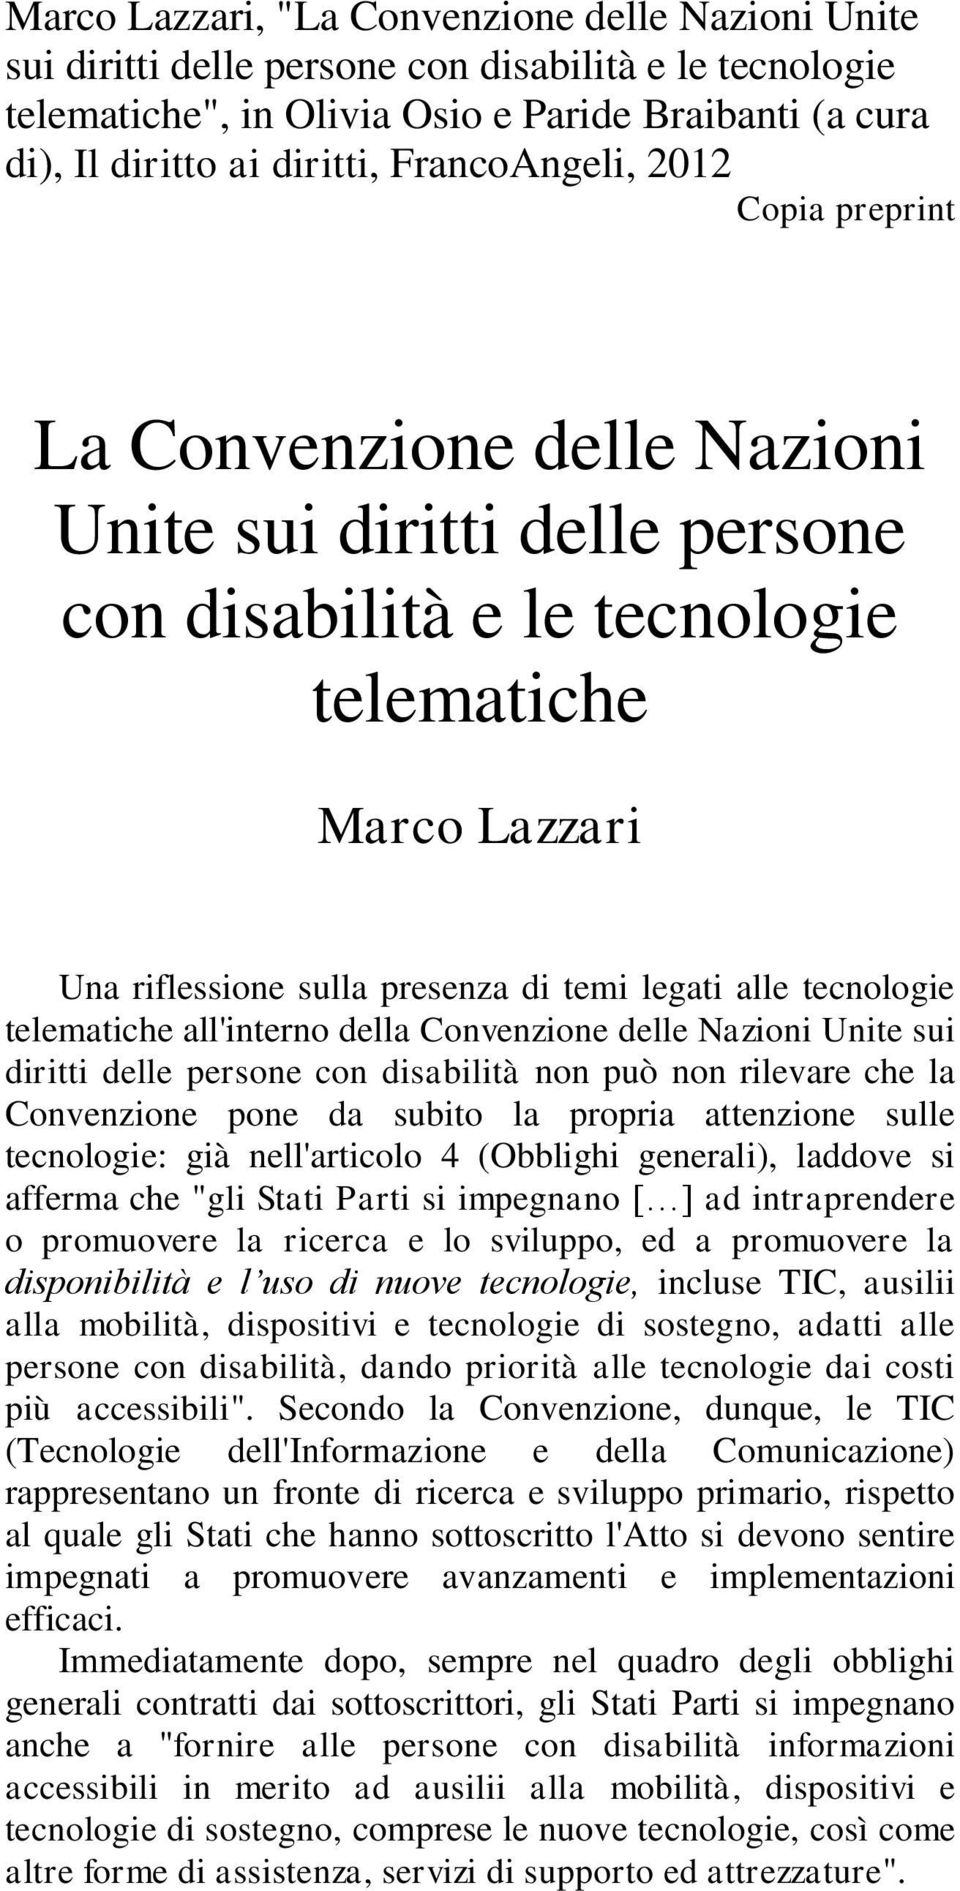 alle tecnologie telematiche all'interno della Convenzione delle Nazioni Unite sui diritti delle persone con disabilità non può non rilevare che la Convenzione pone da subito la propria attenzione